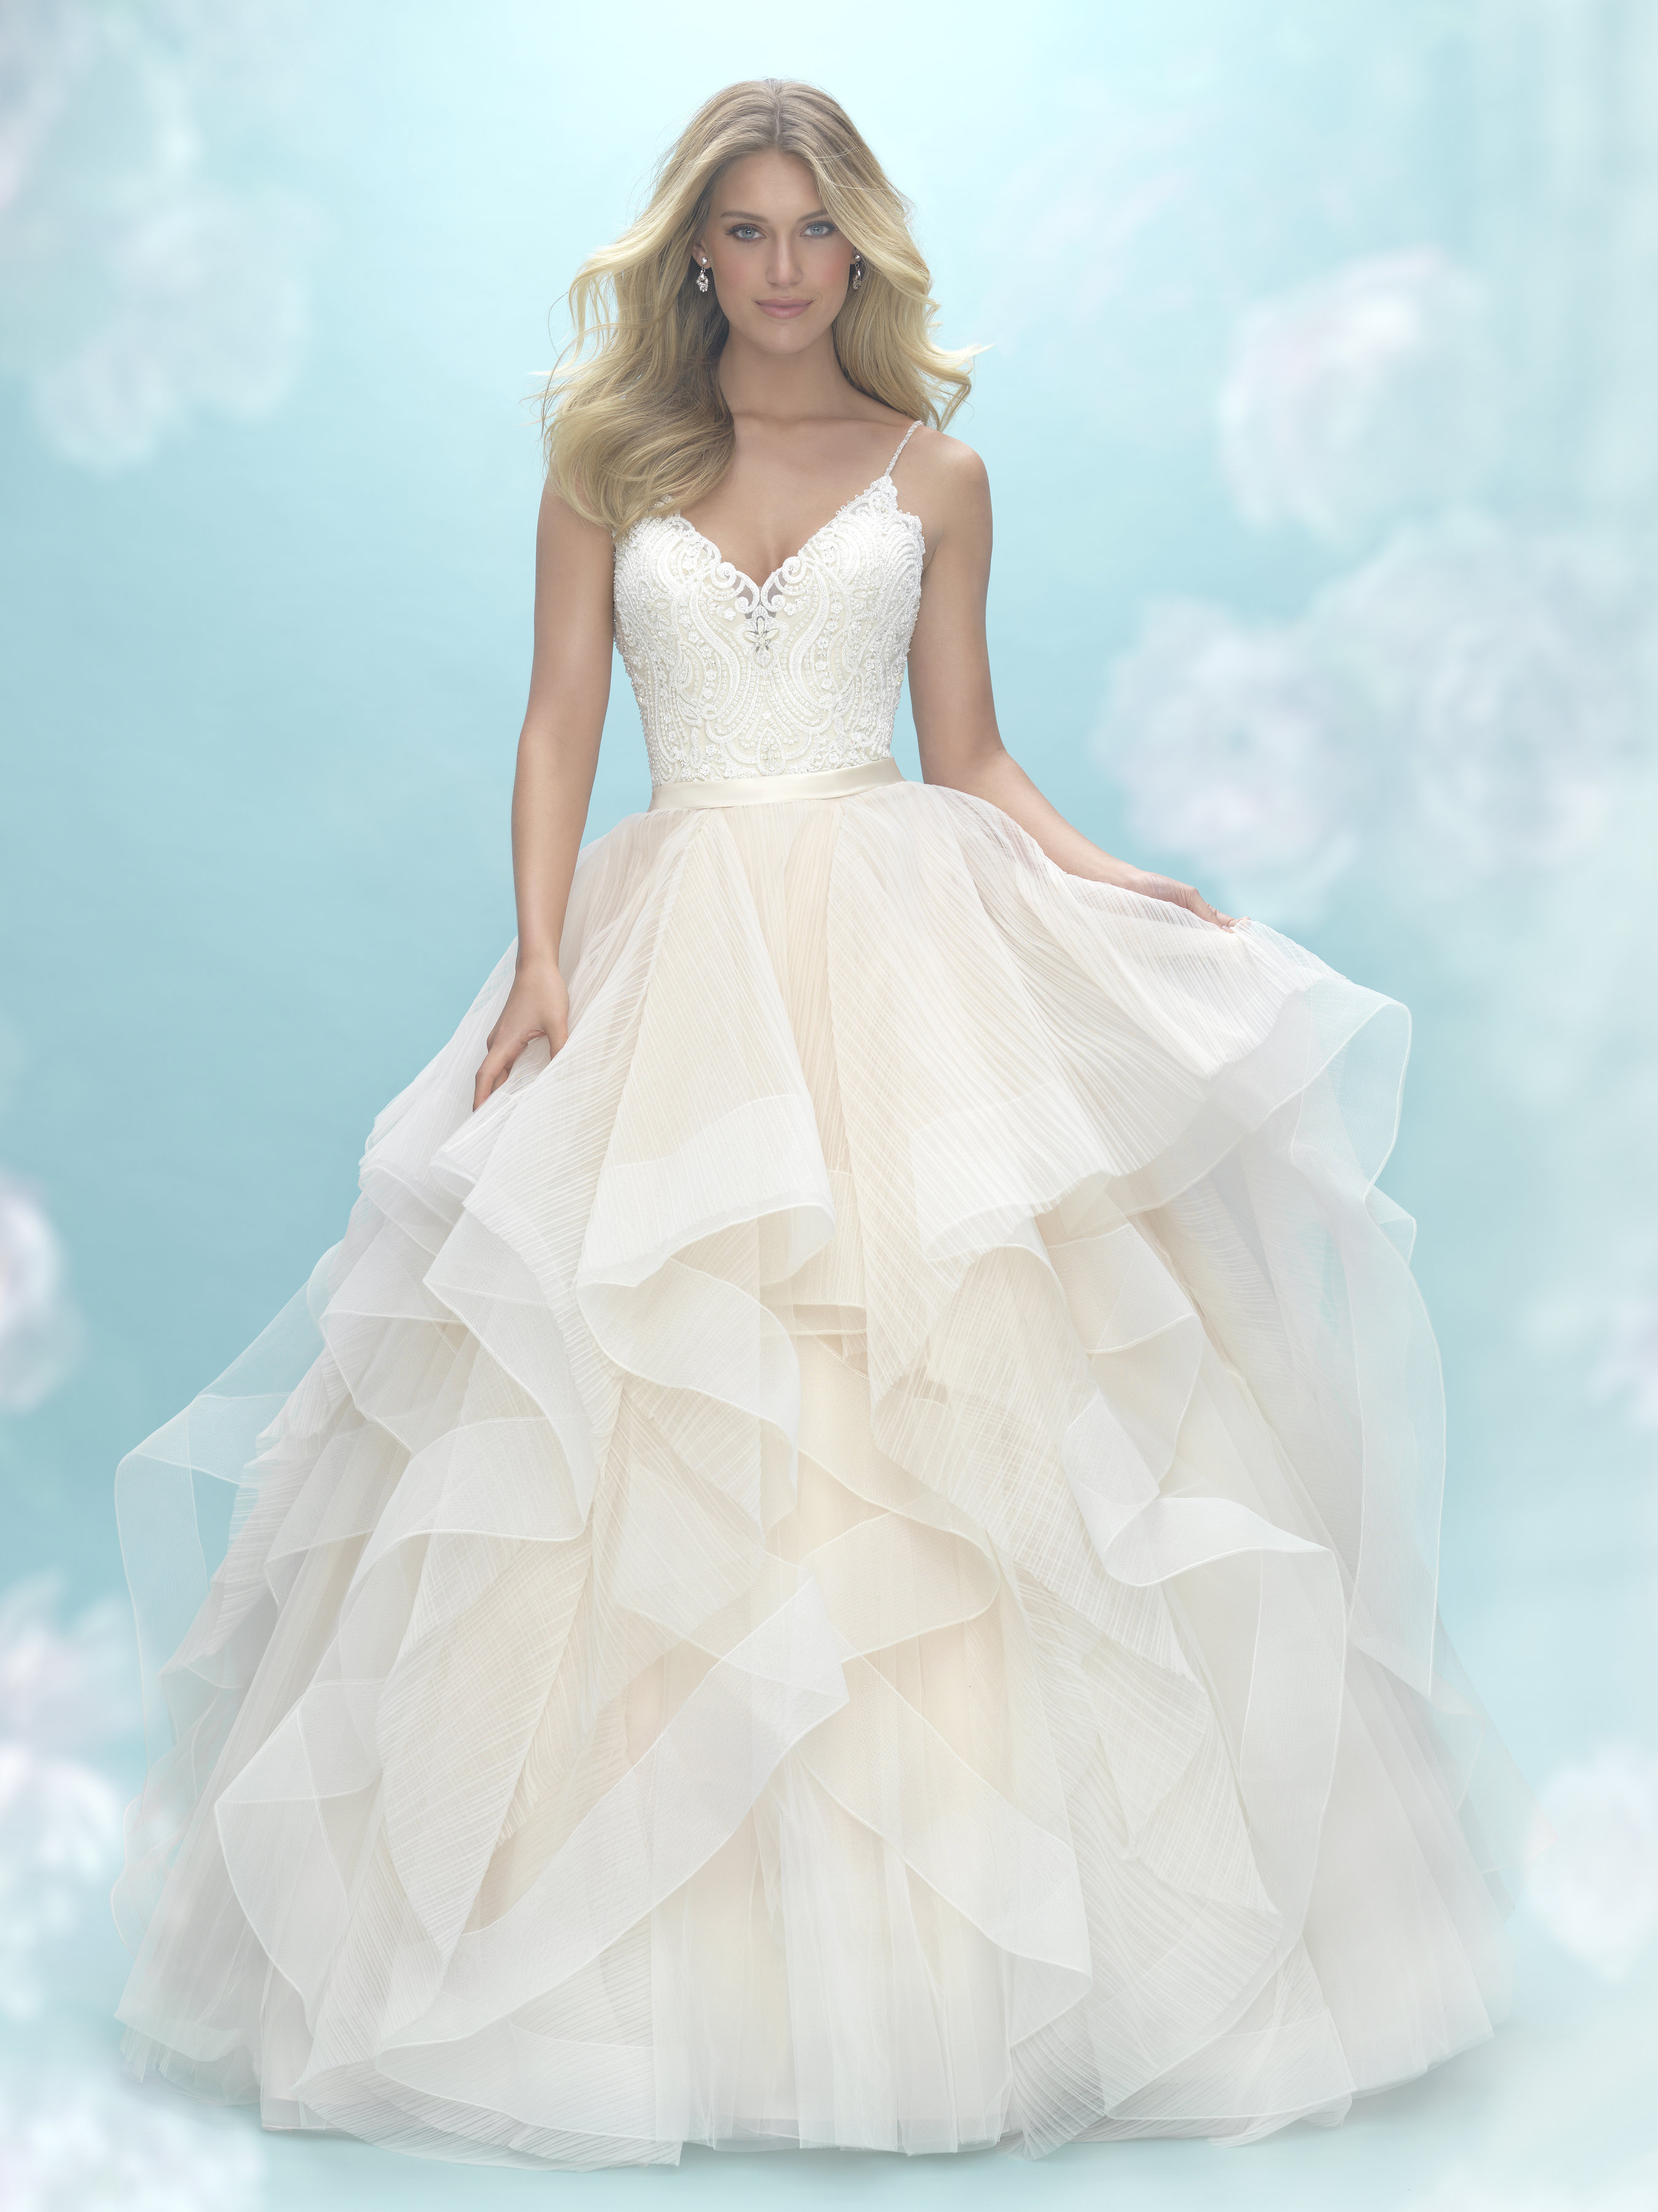 A1104 Ball Gown Wedding Dress by Allure Bridals - WeddingWire.com